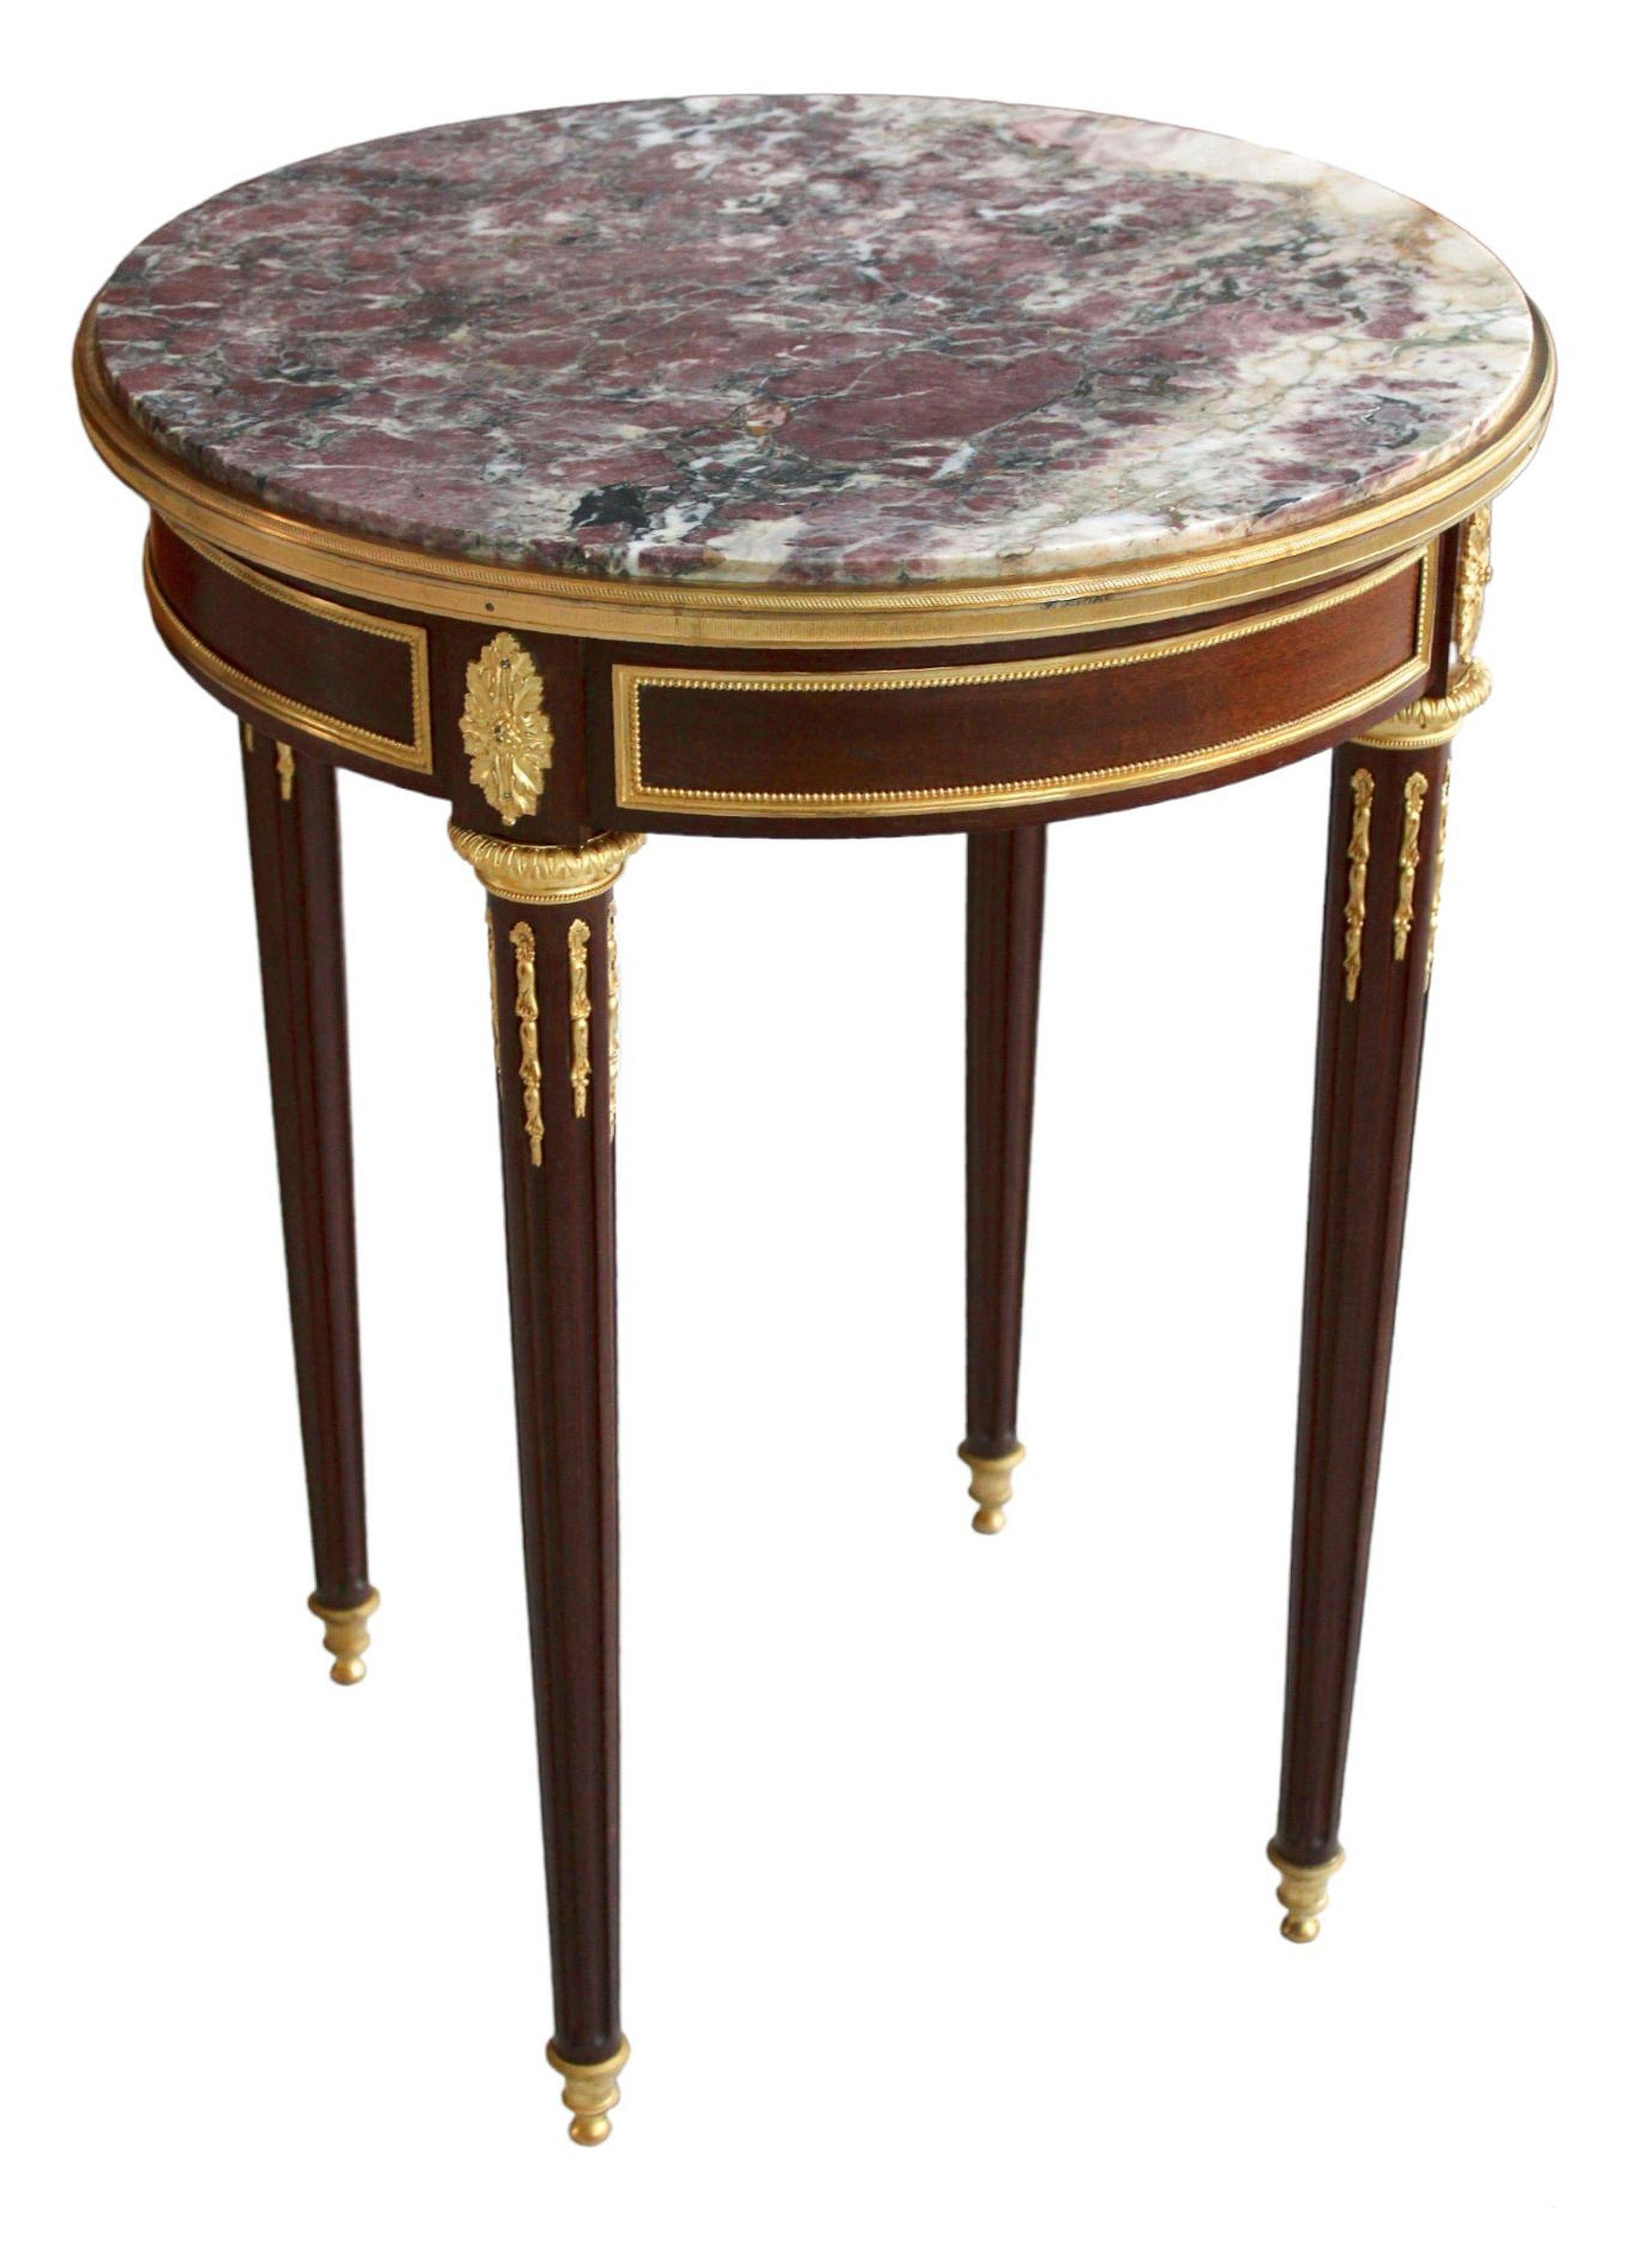 Franz Linke (1855-1946)

Tisch aus Eiche, furniert mit Mahagoni, Marmorplatte, vergoldete Bronze, Beine aus Mahagoniholz, 75,5 cm; T 59 cm